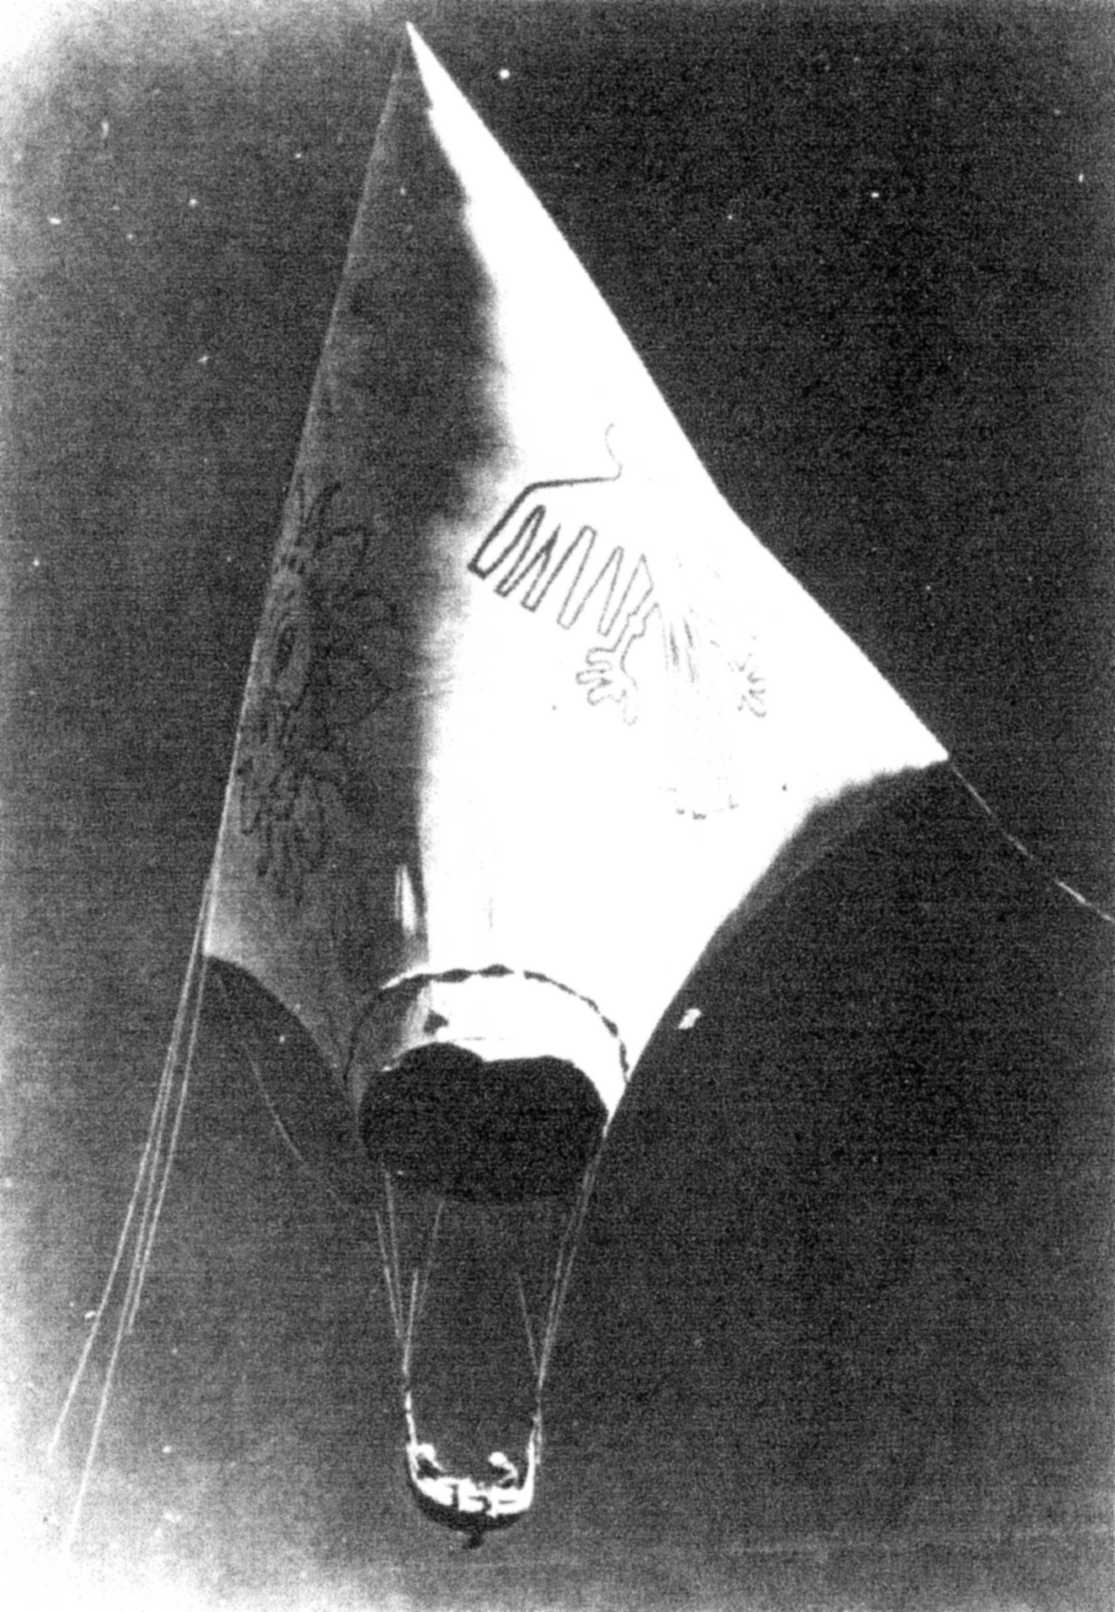 Condor 1 überfliegt 1975 die Bilder von Nazca